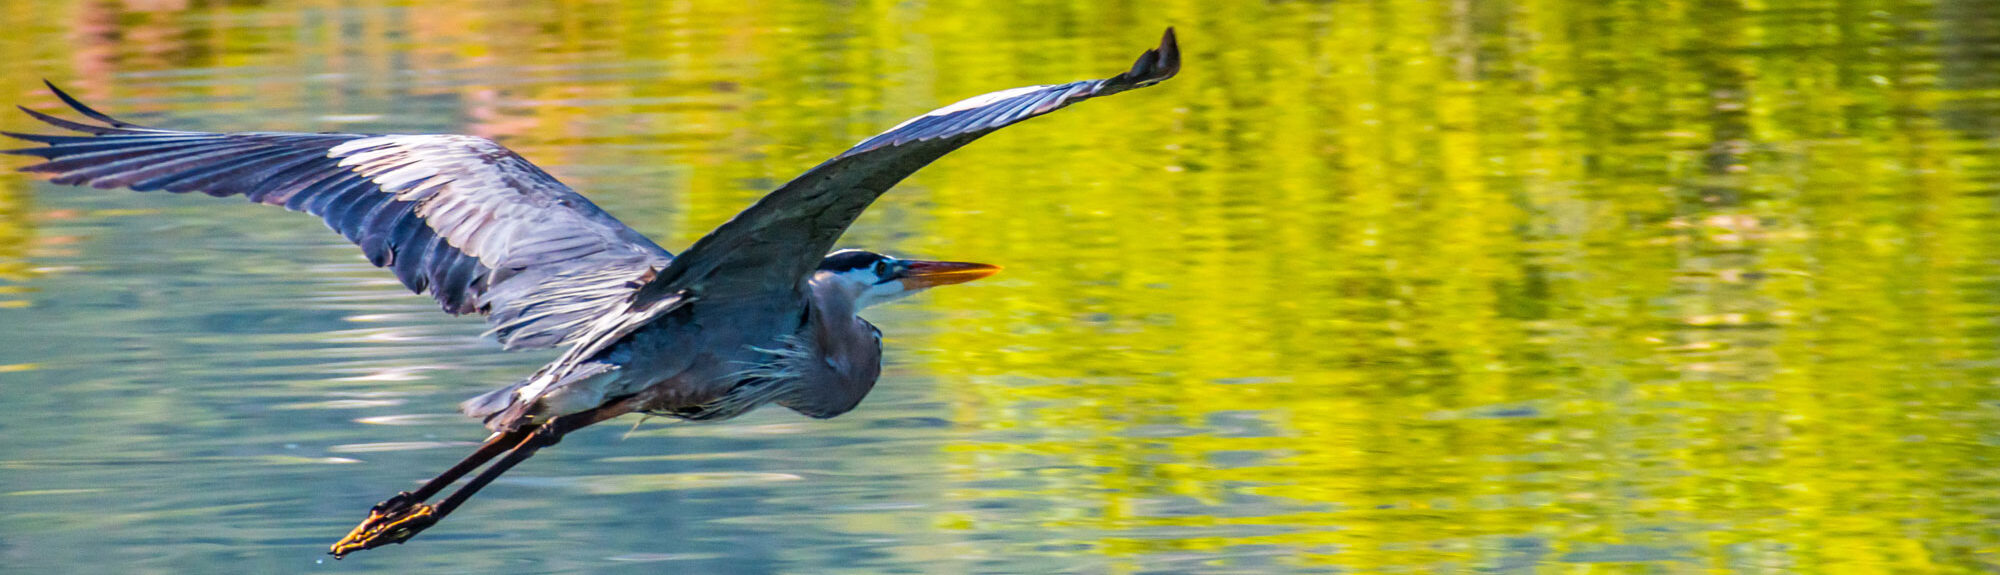 photo - A big Great Blue Heron in Lake Elsinore, California